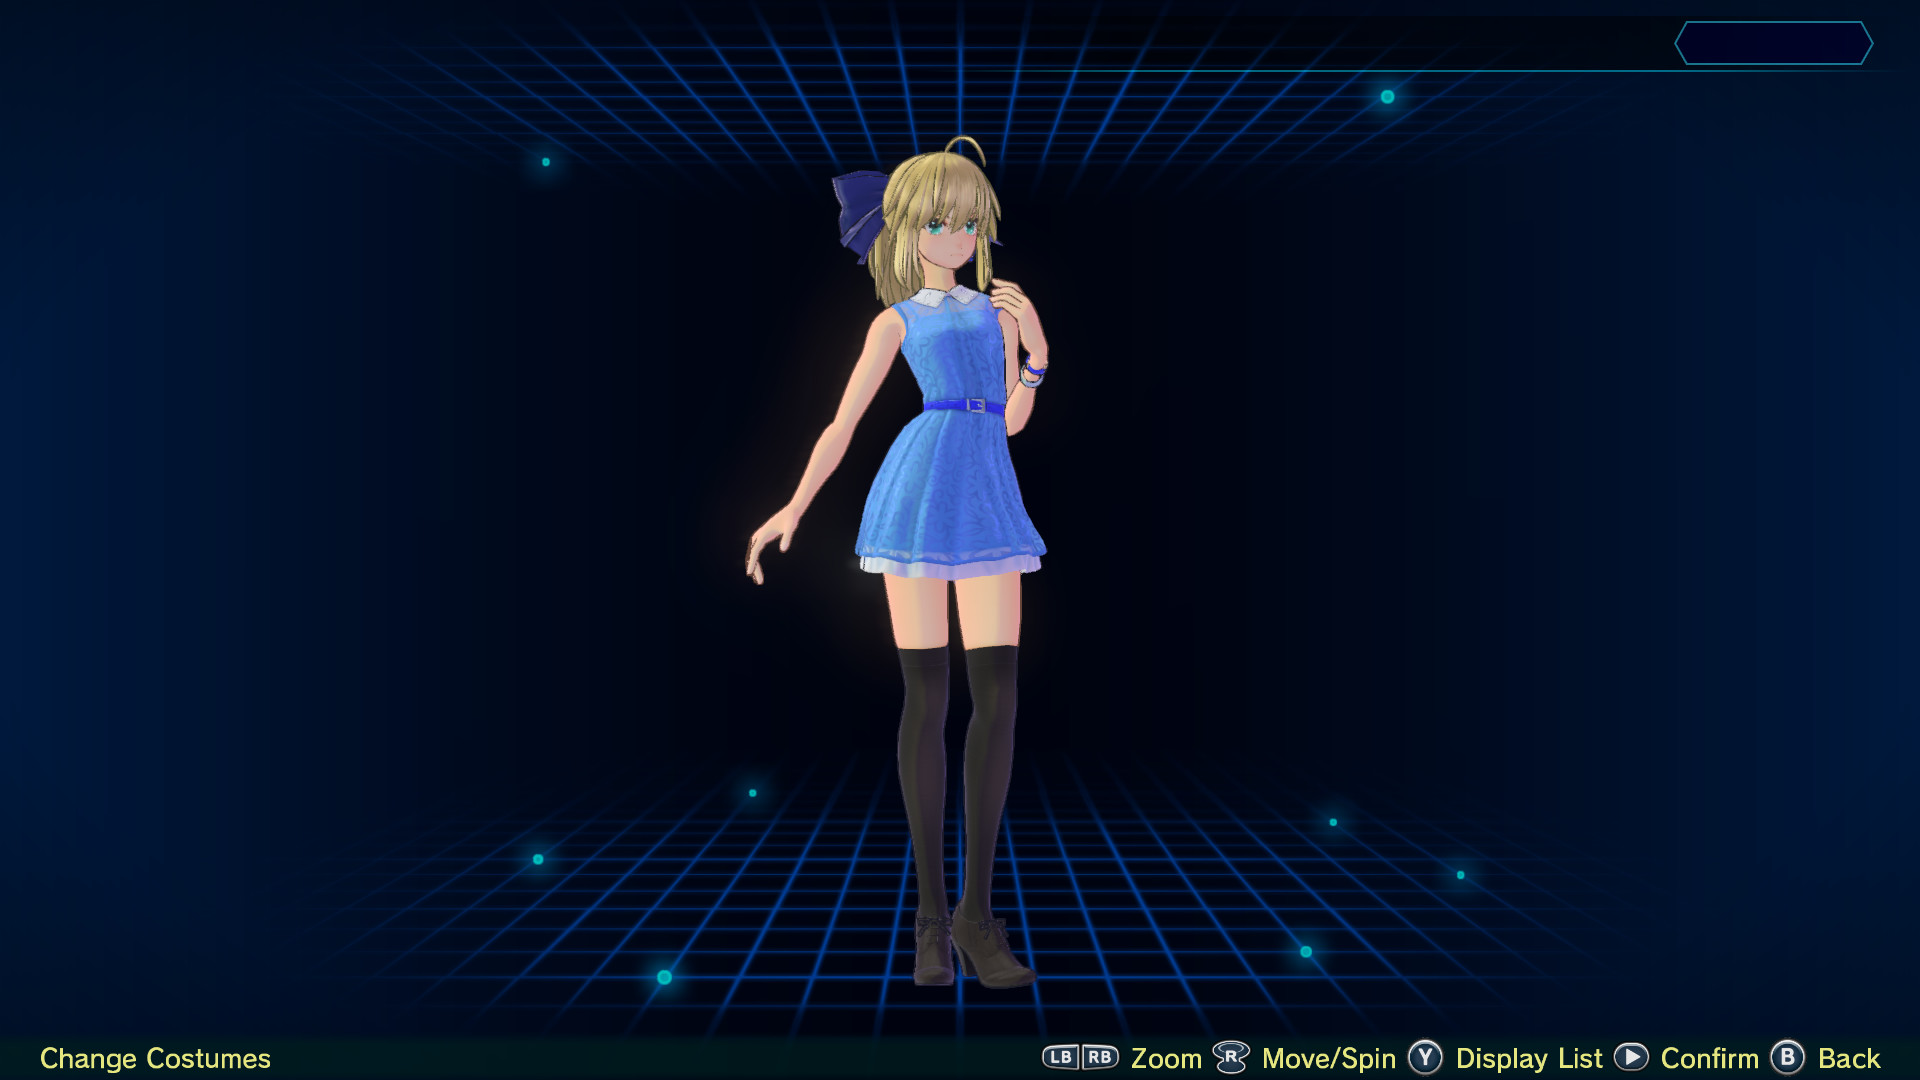 Fate/EXTELLA LINK - Sky Blue Dress Featured Screenshot #1